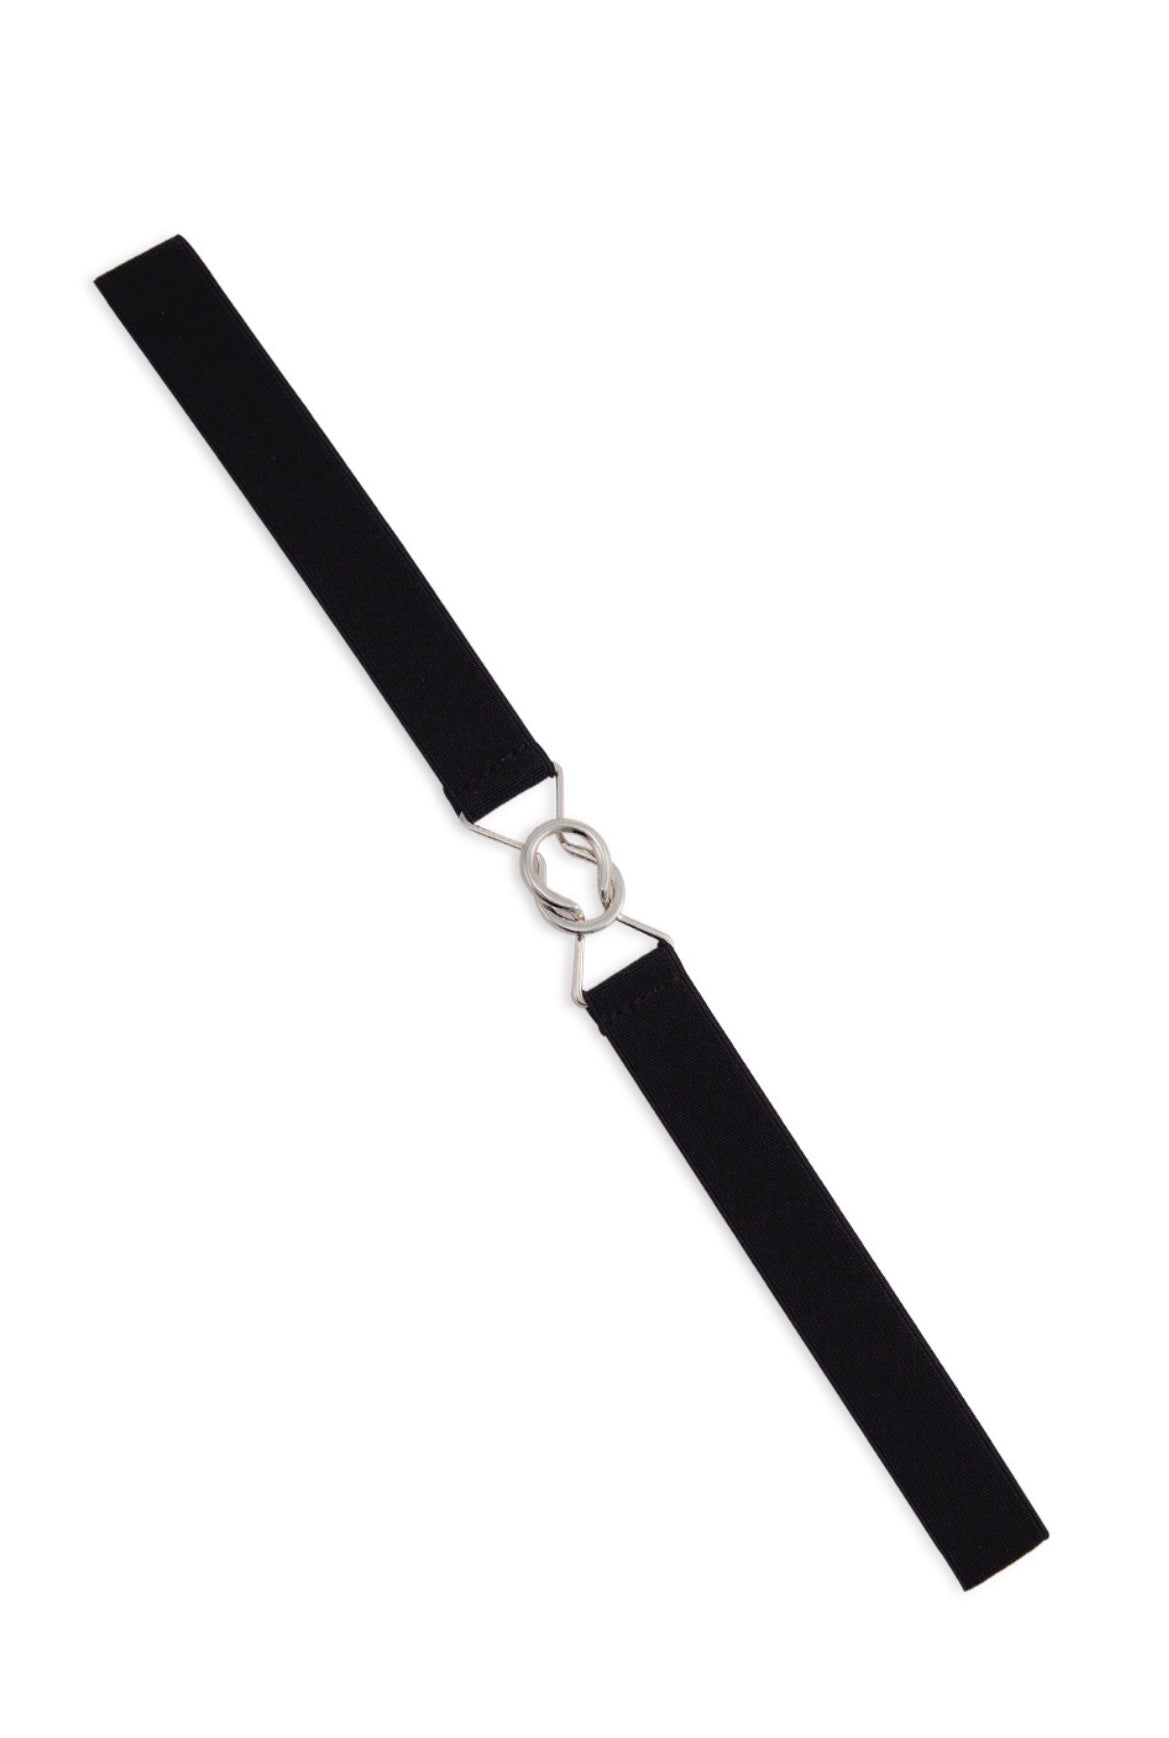 Matcha belt - black - Isabel’s Retro & Vintage Clothing